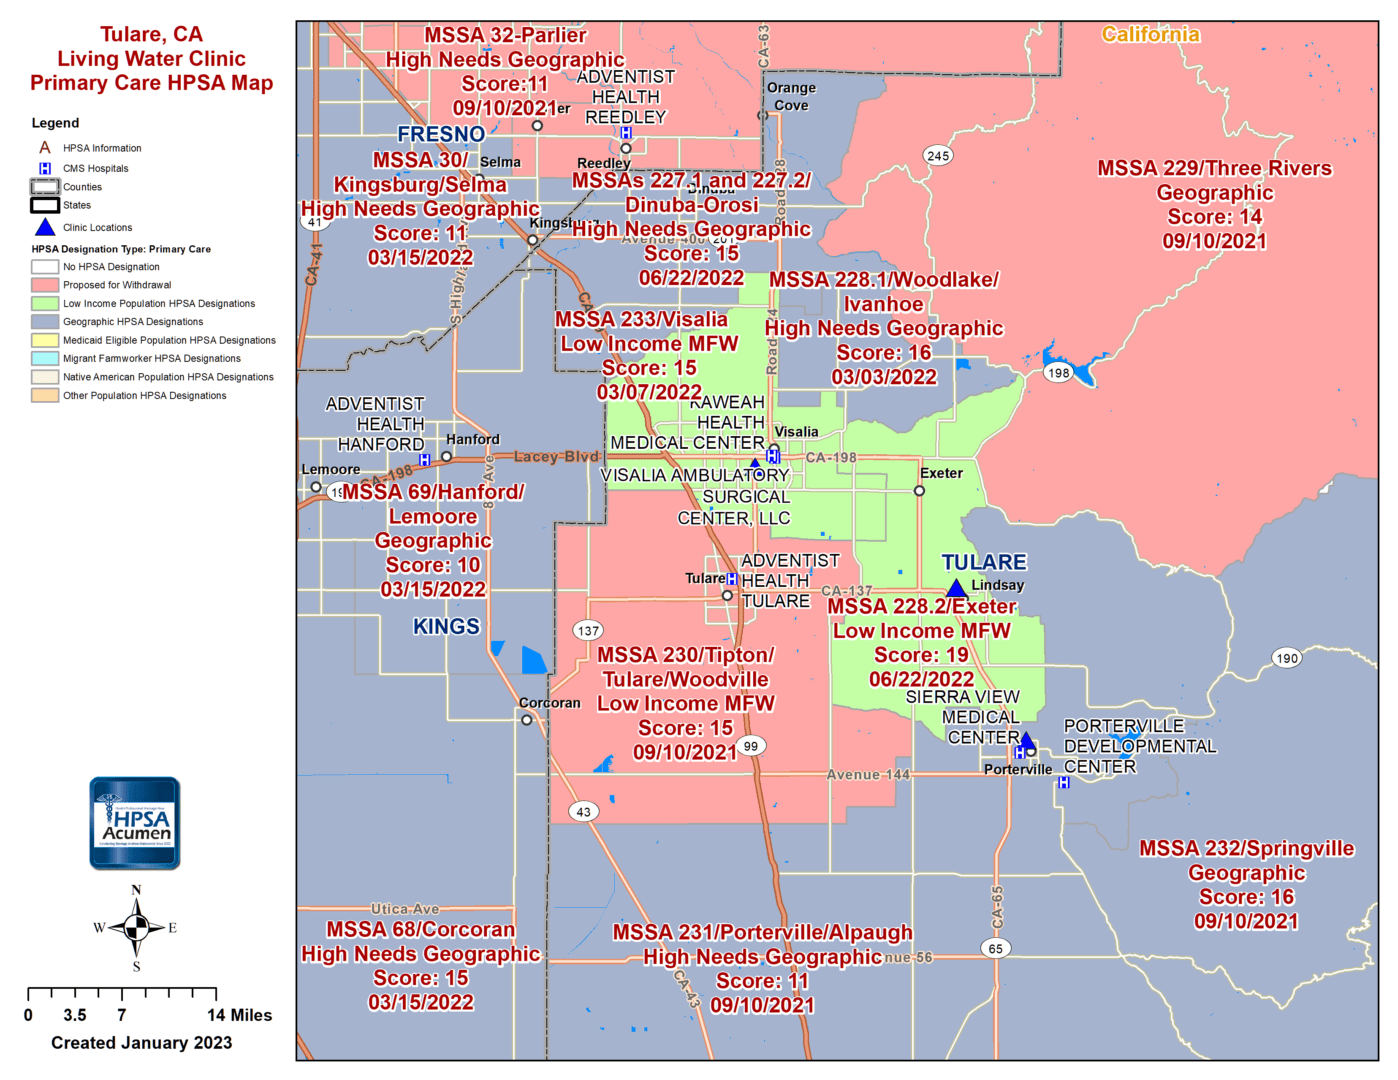 Tulare, CA PC HPSA Map